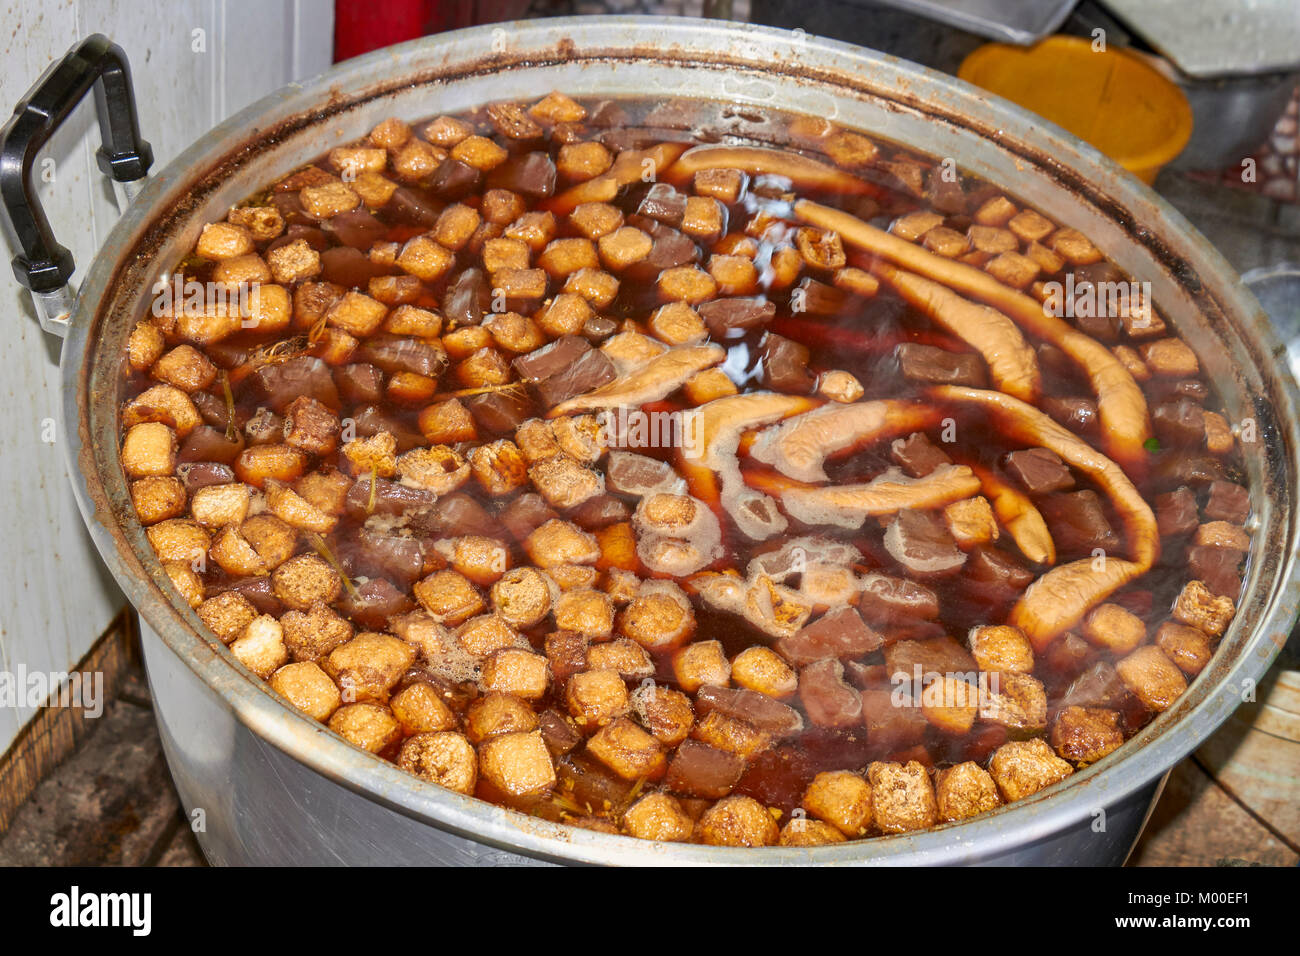 A pot of pig offal simmering at a Bangkok, Thailand street food stall Stock Photo